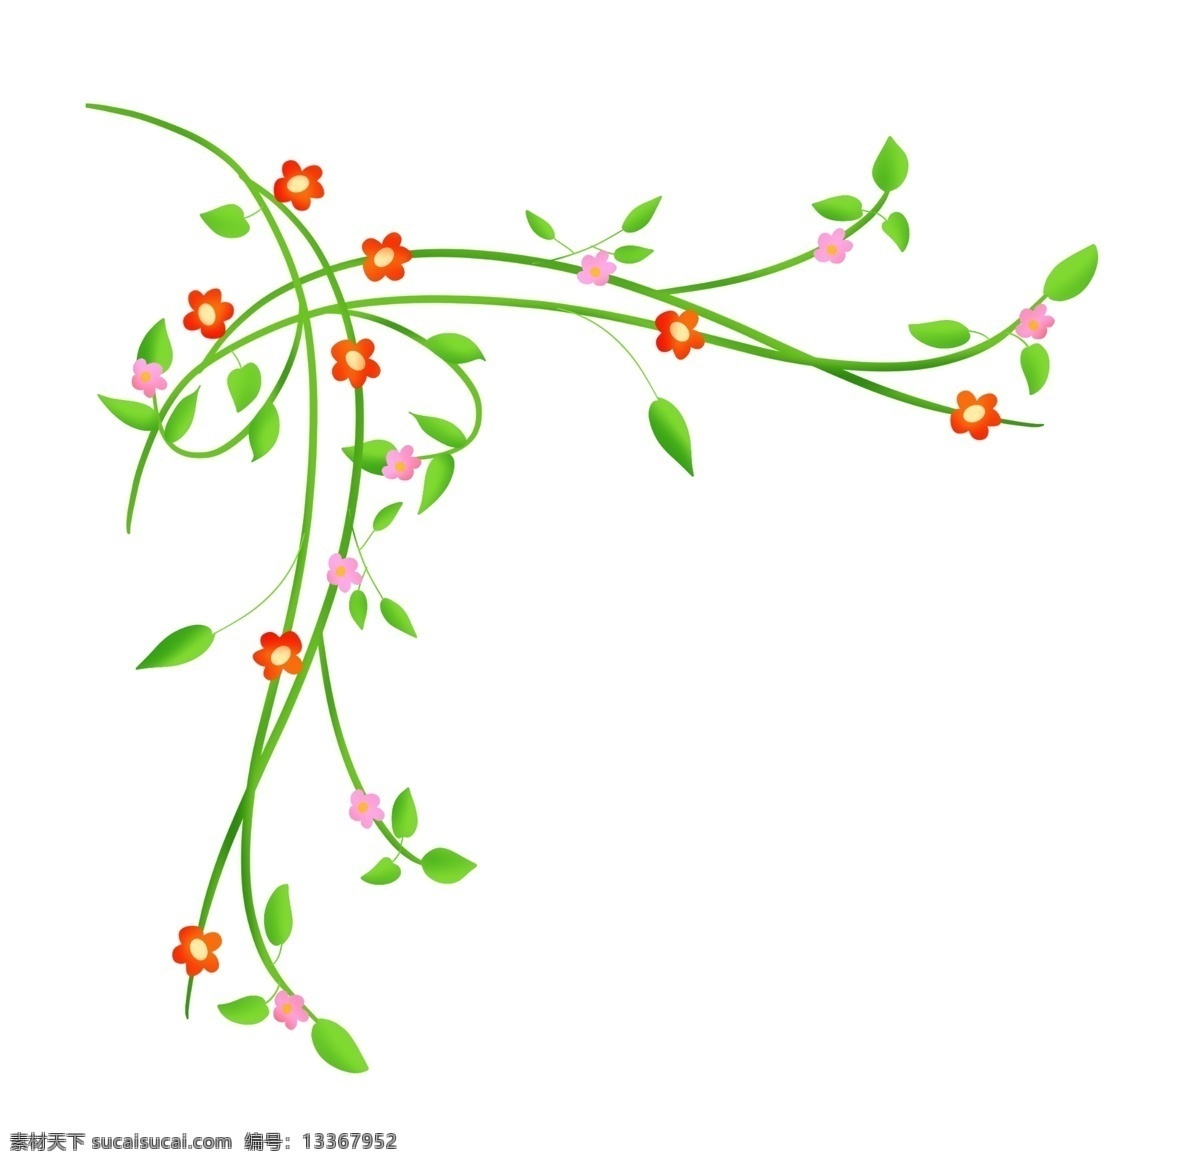 绿色 花 藤 装饰 插画 绿色的花藤 装饰插画 红色的小花 植物 藤条 边框 创意花藤 卡通花藤 漂亮的花朵